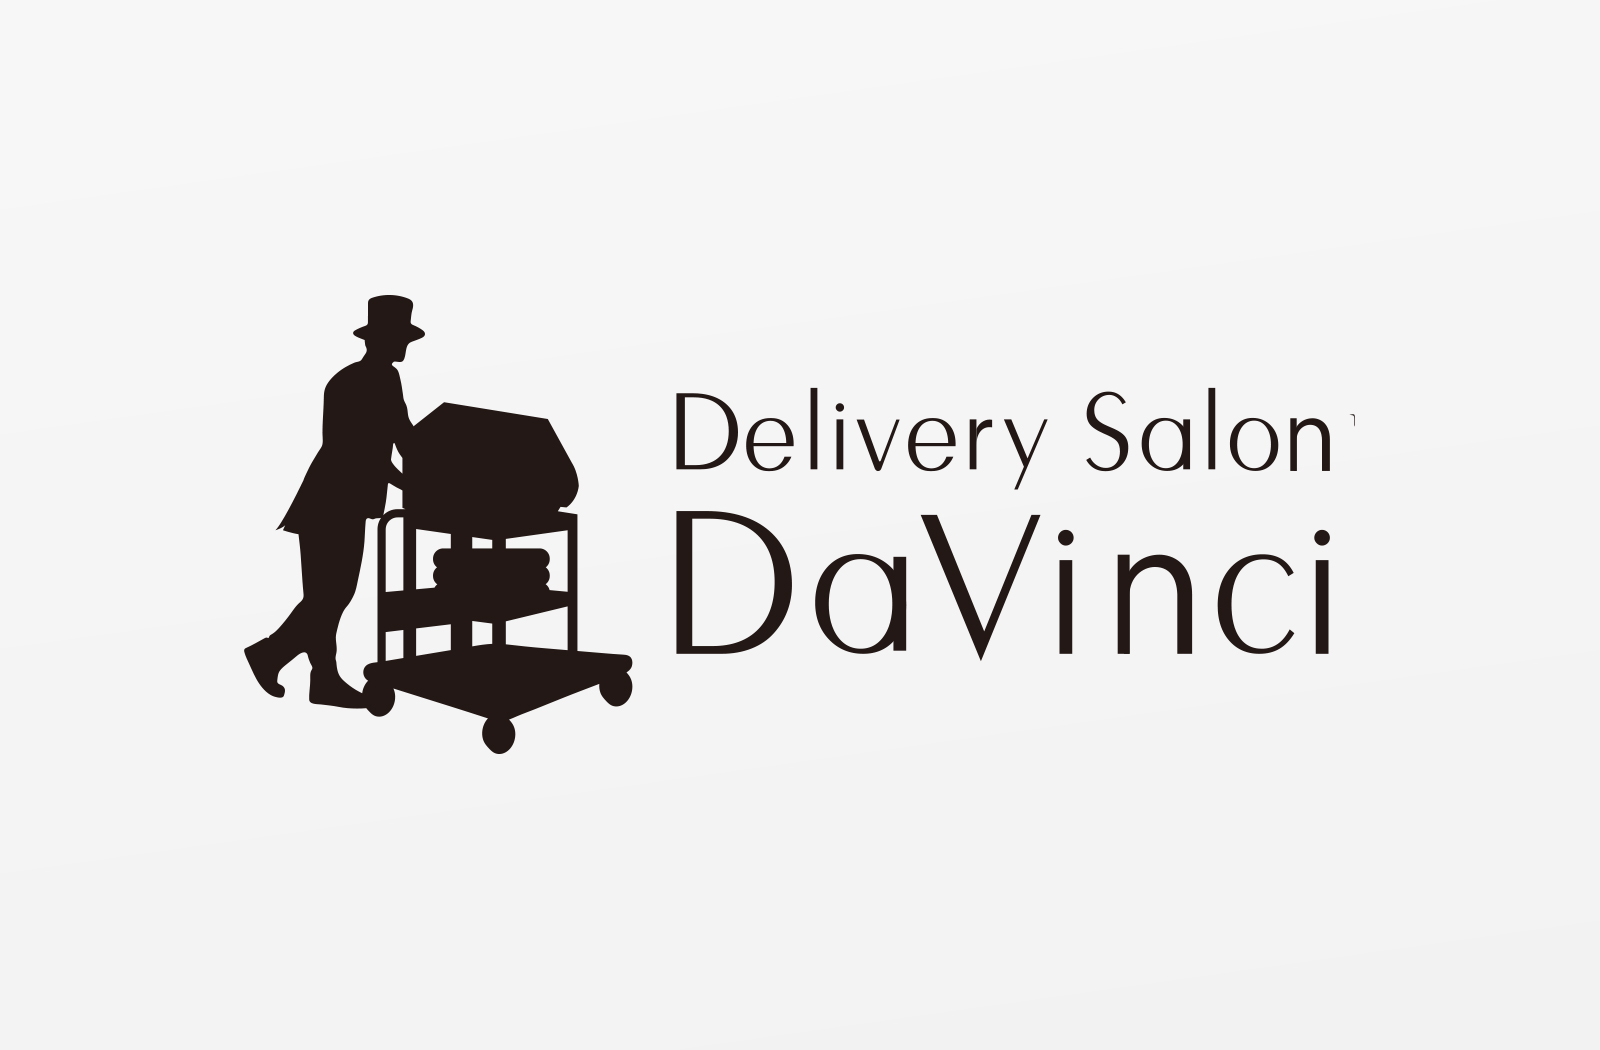 男性専用の出張脱毛サービス「Davinci」様のロゴデザイン